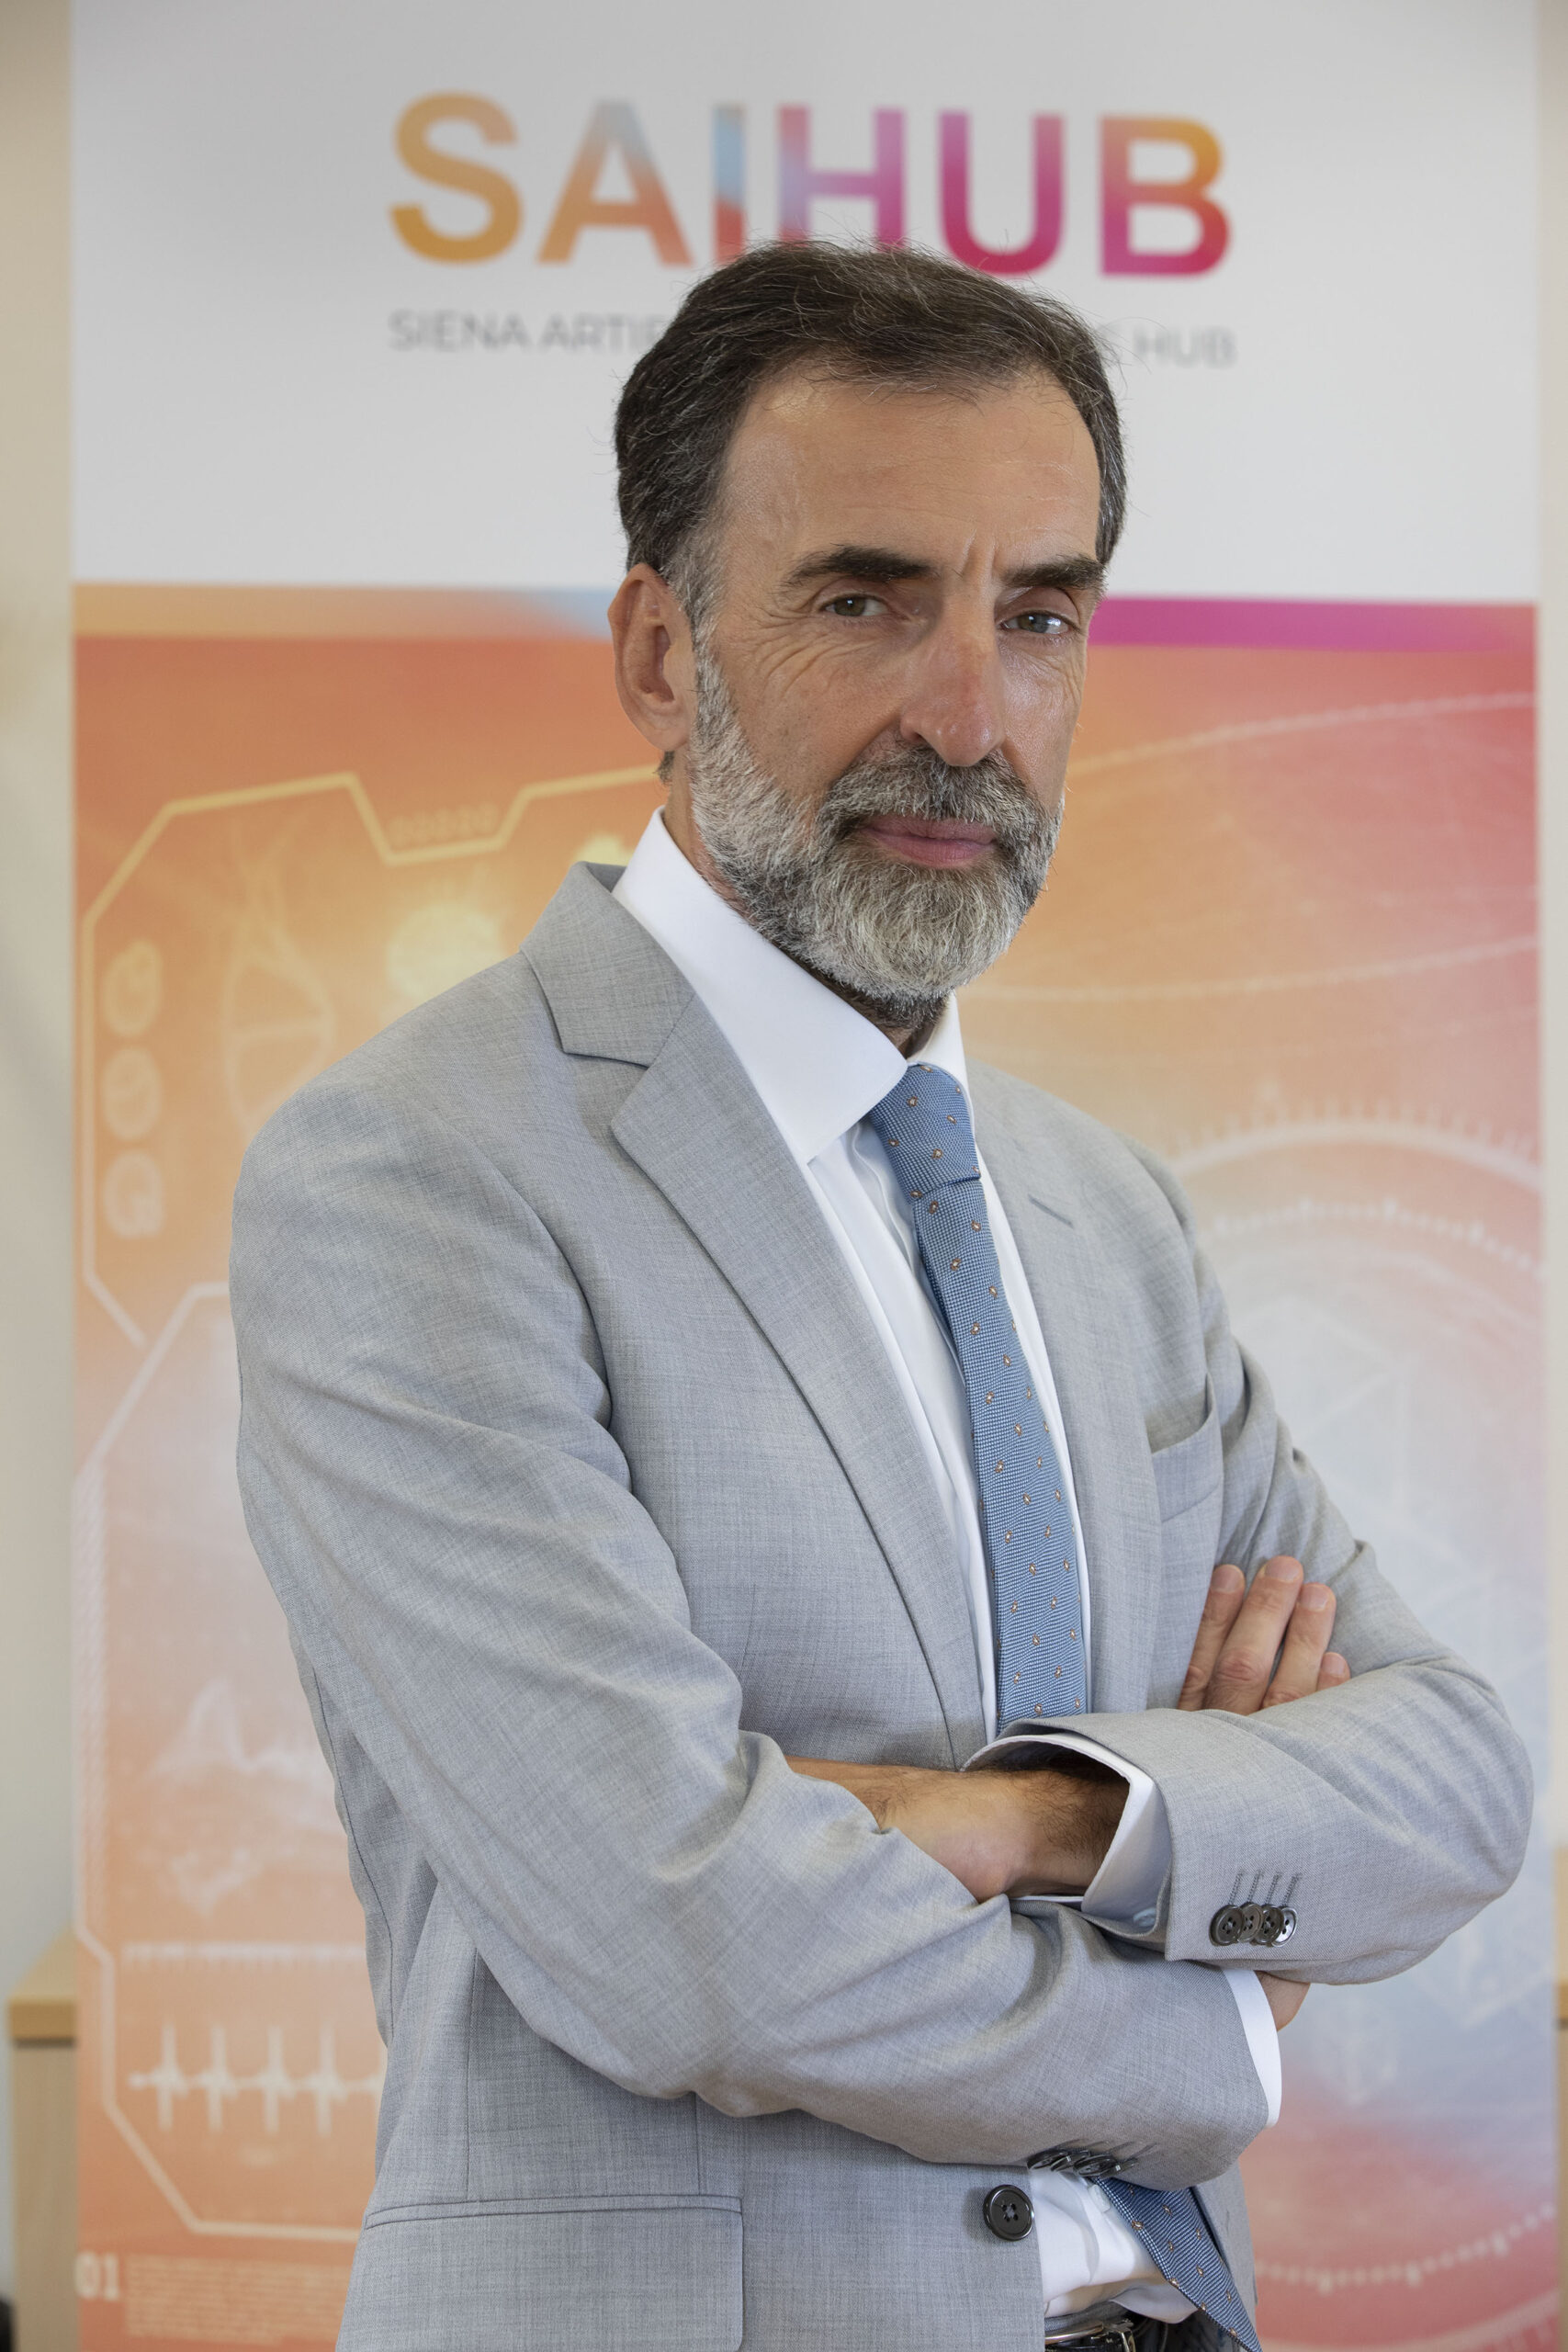 Valter Fraccaro je prezidentem SAIHub, což je zkratka pro Siena Artificial Intelligence Hub, centrum globálního významu v oblasti biologických věd.